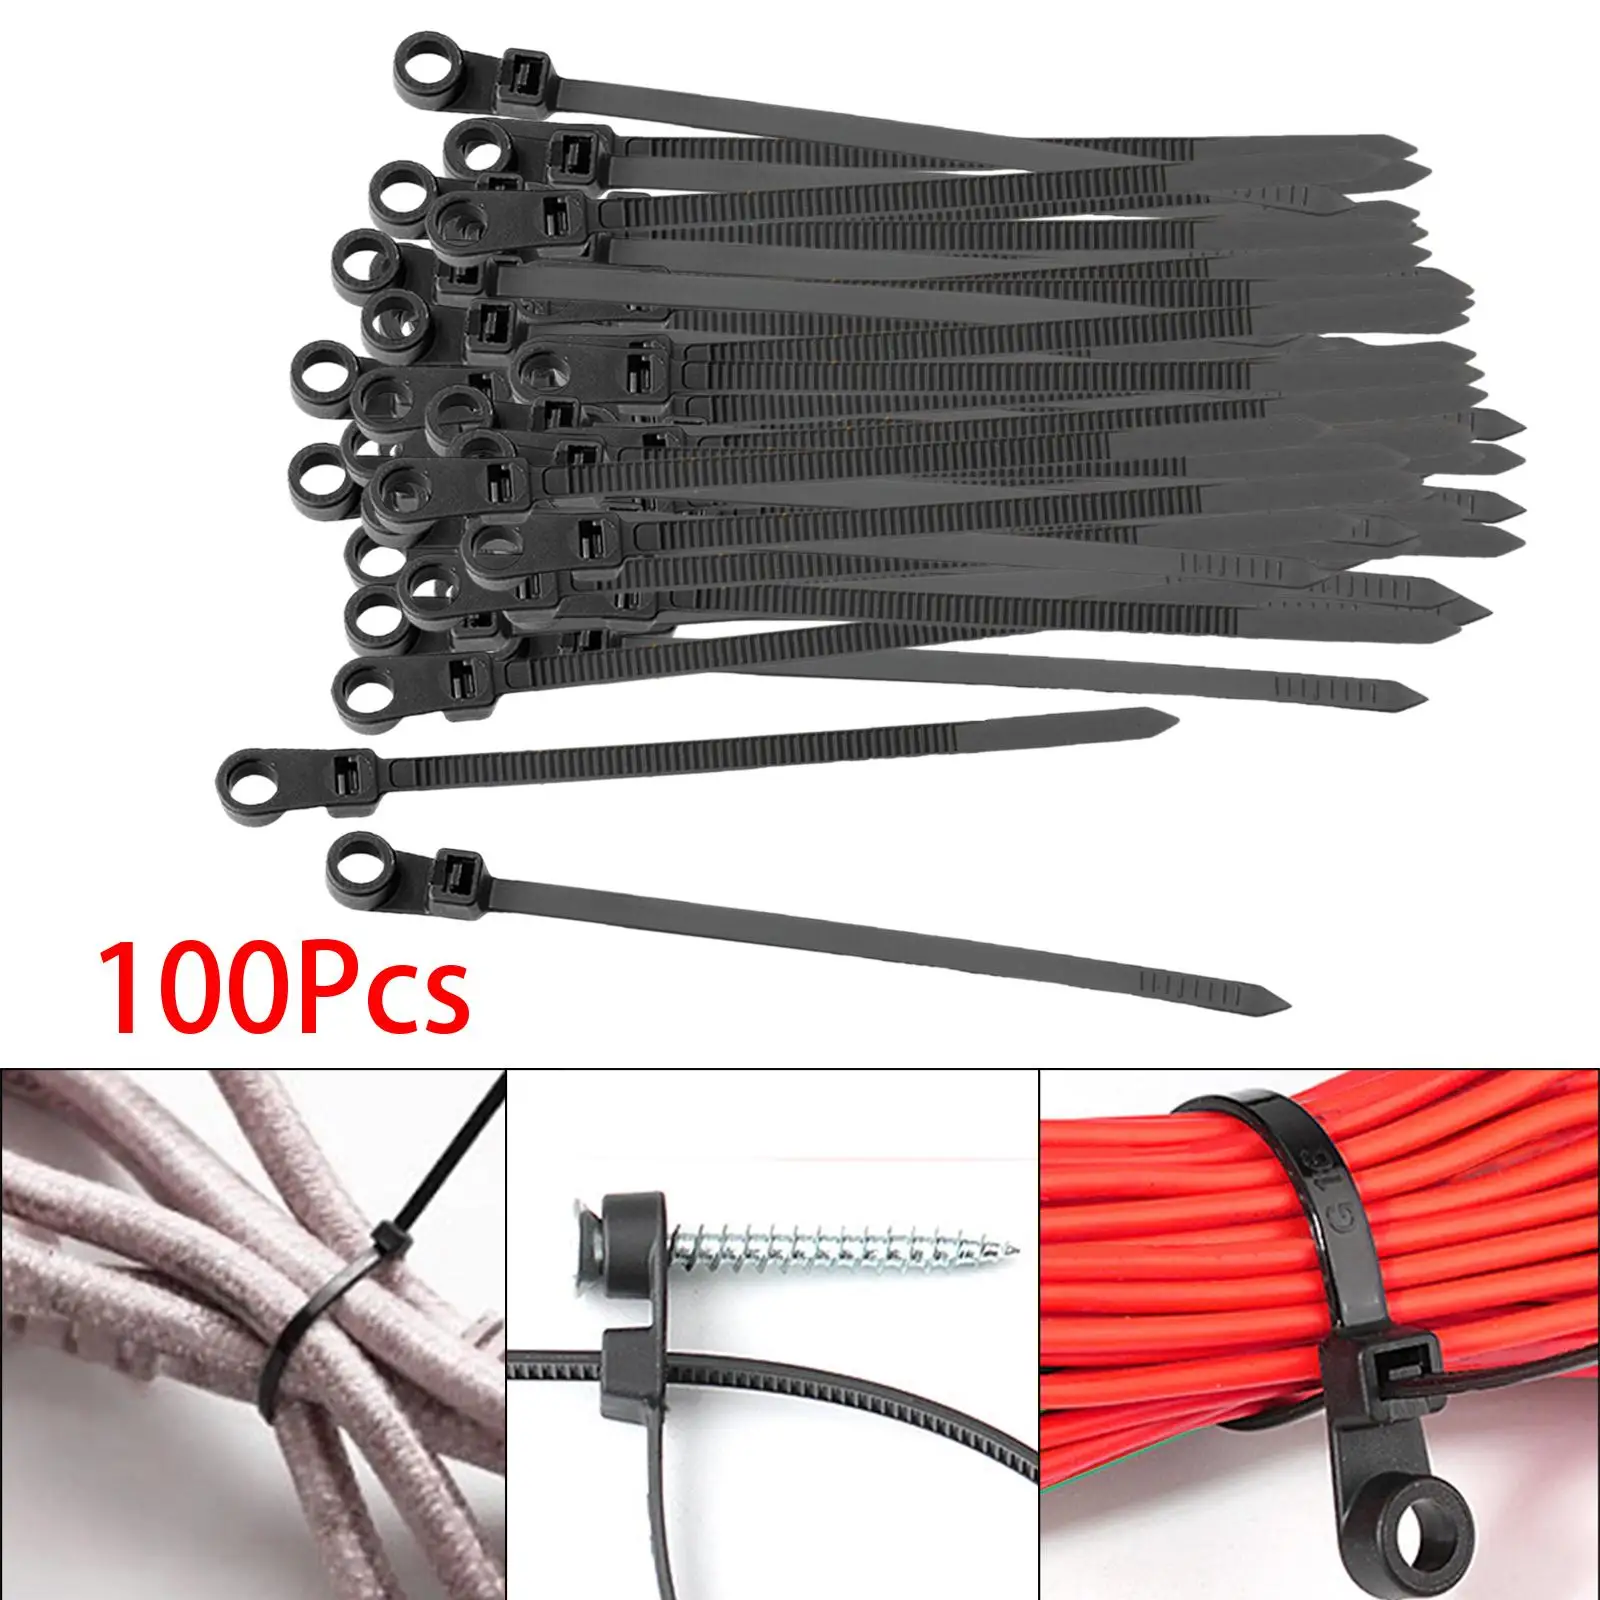 100x Nylon Cable Wire Zip Ties Mounting Hole Heavy Duty Zip Wire Ties for Garden Trellis Indoor Outdoor Garage Home Office